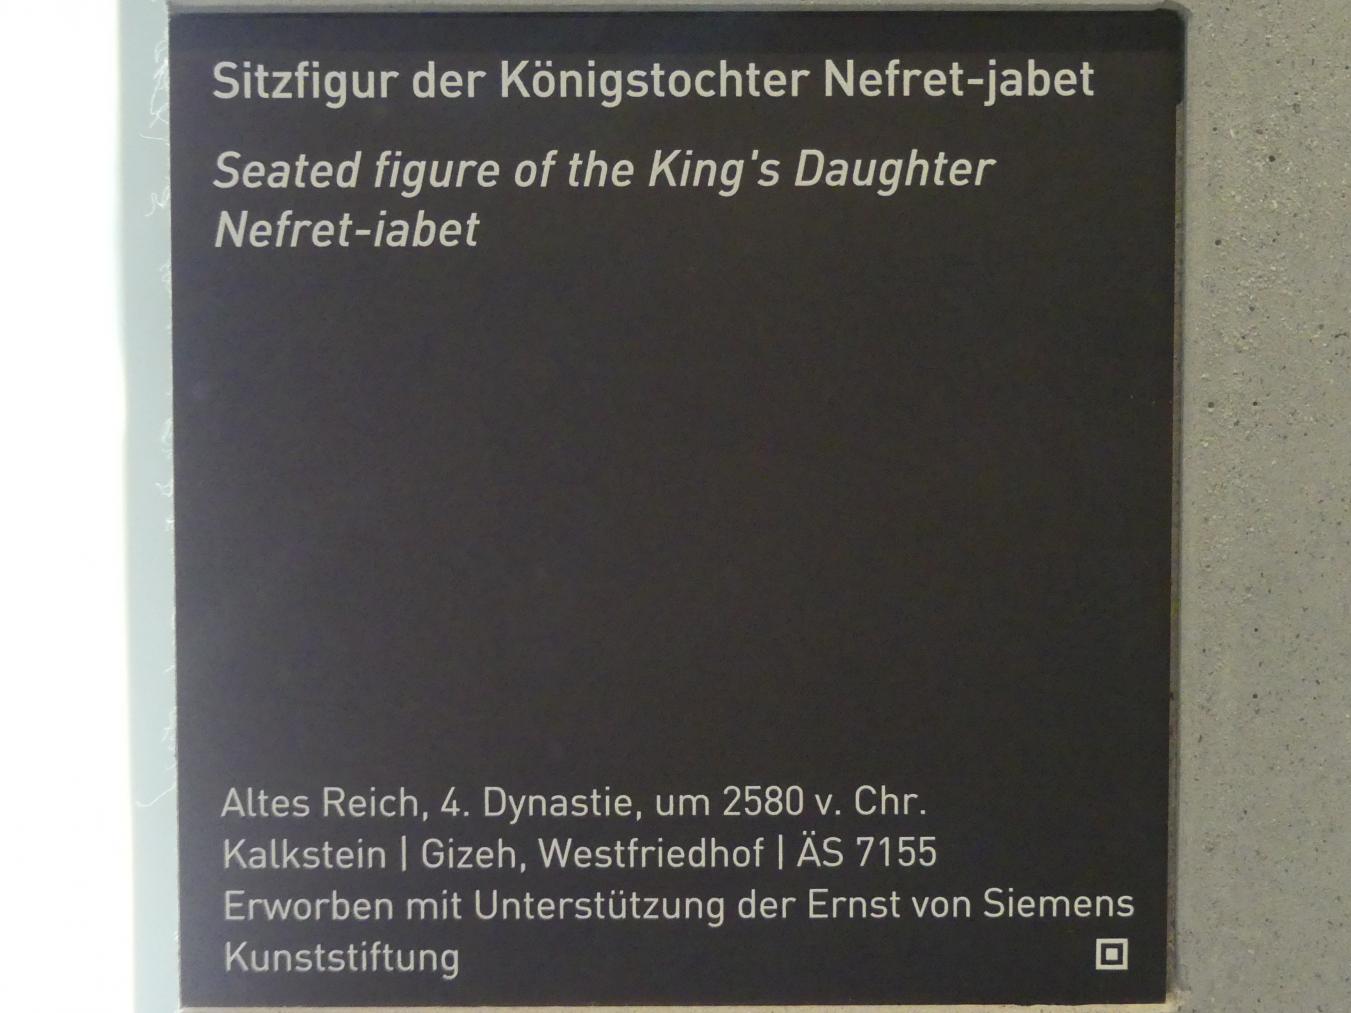 Sitzfigur der Königstochter Nefret-jabet, 4. Dynastie, 2462 - 2353 v. Chr., 2580 v. Chr., Bild 5/5